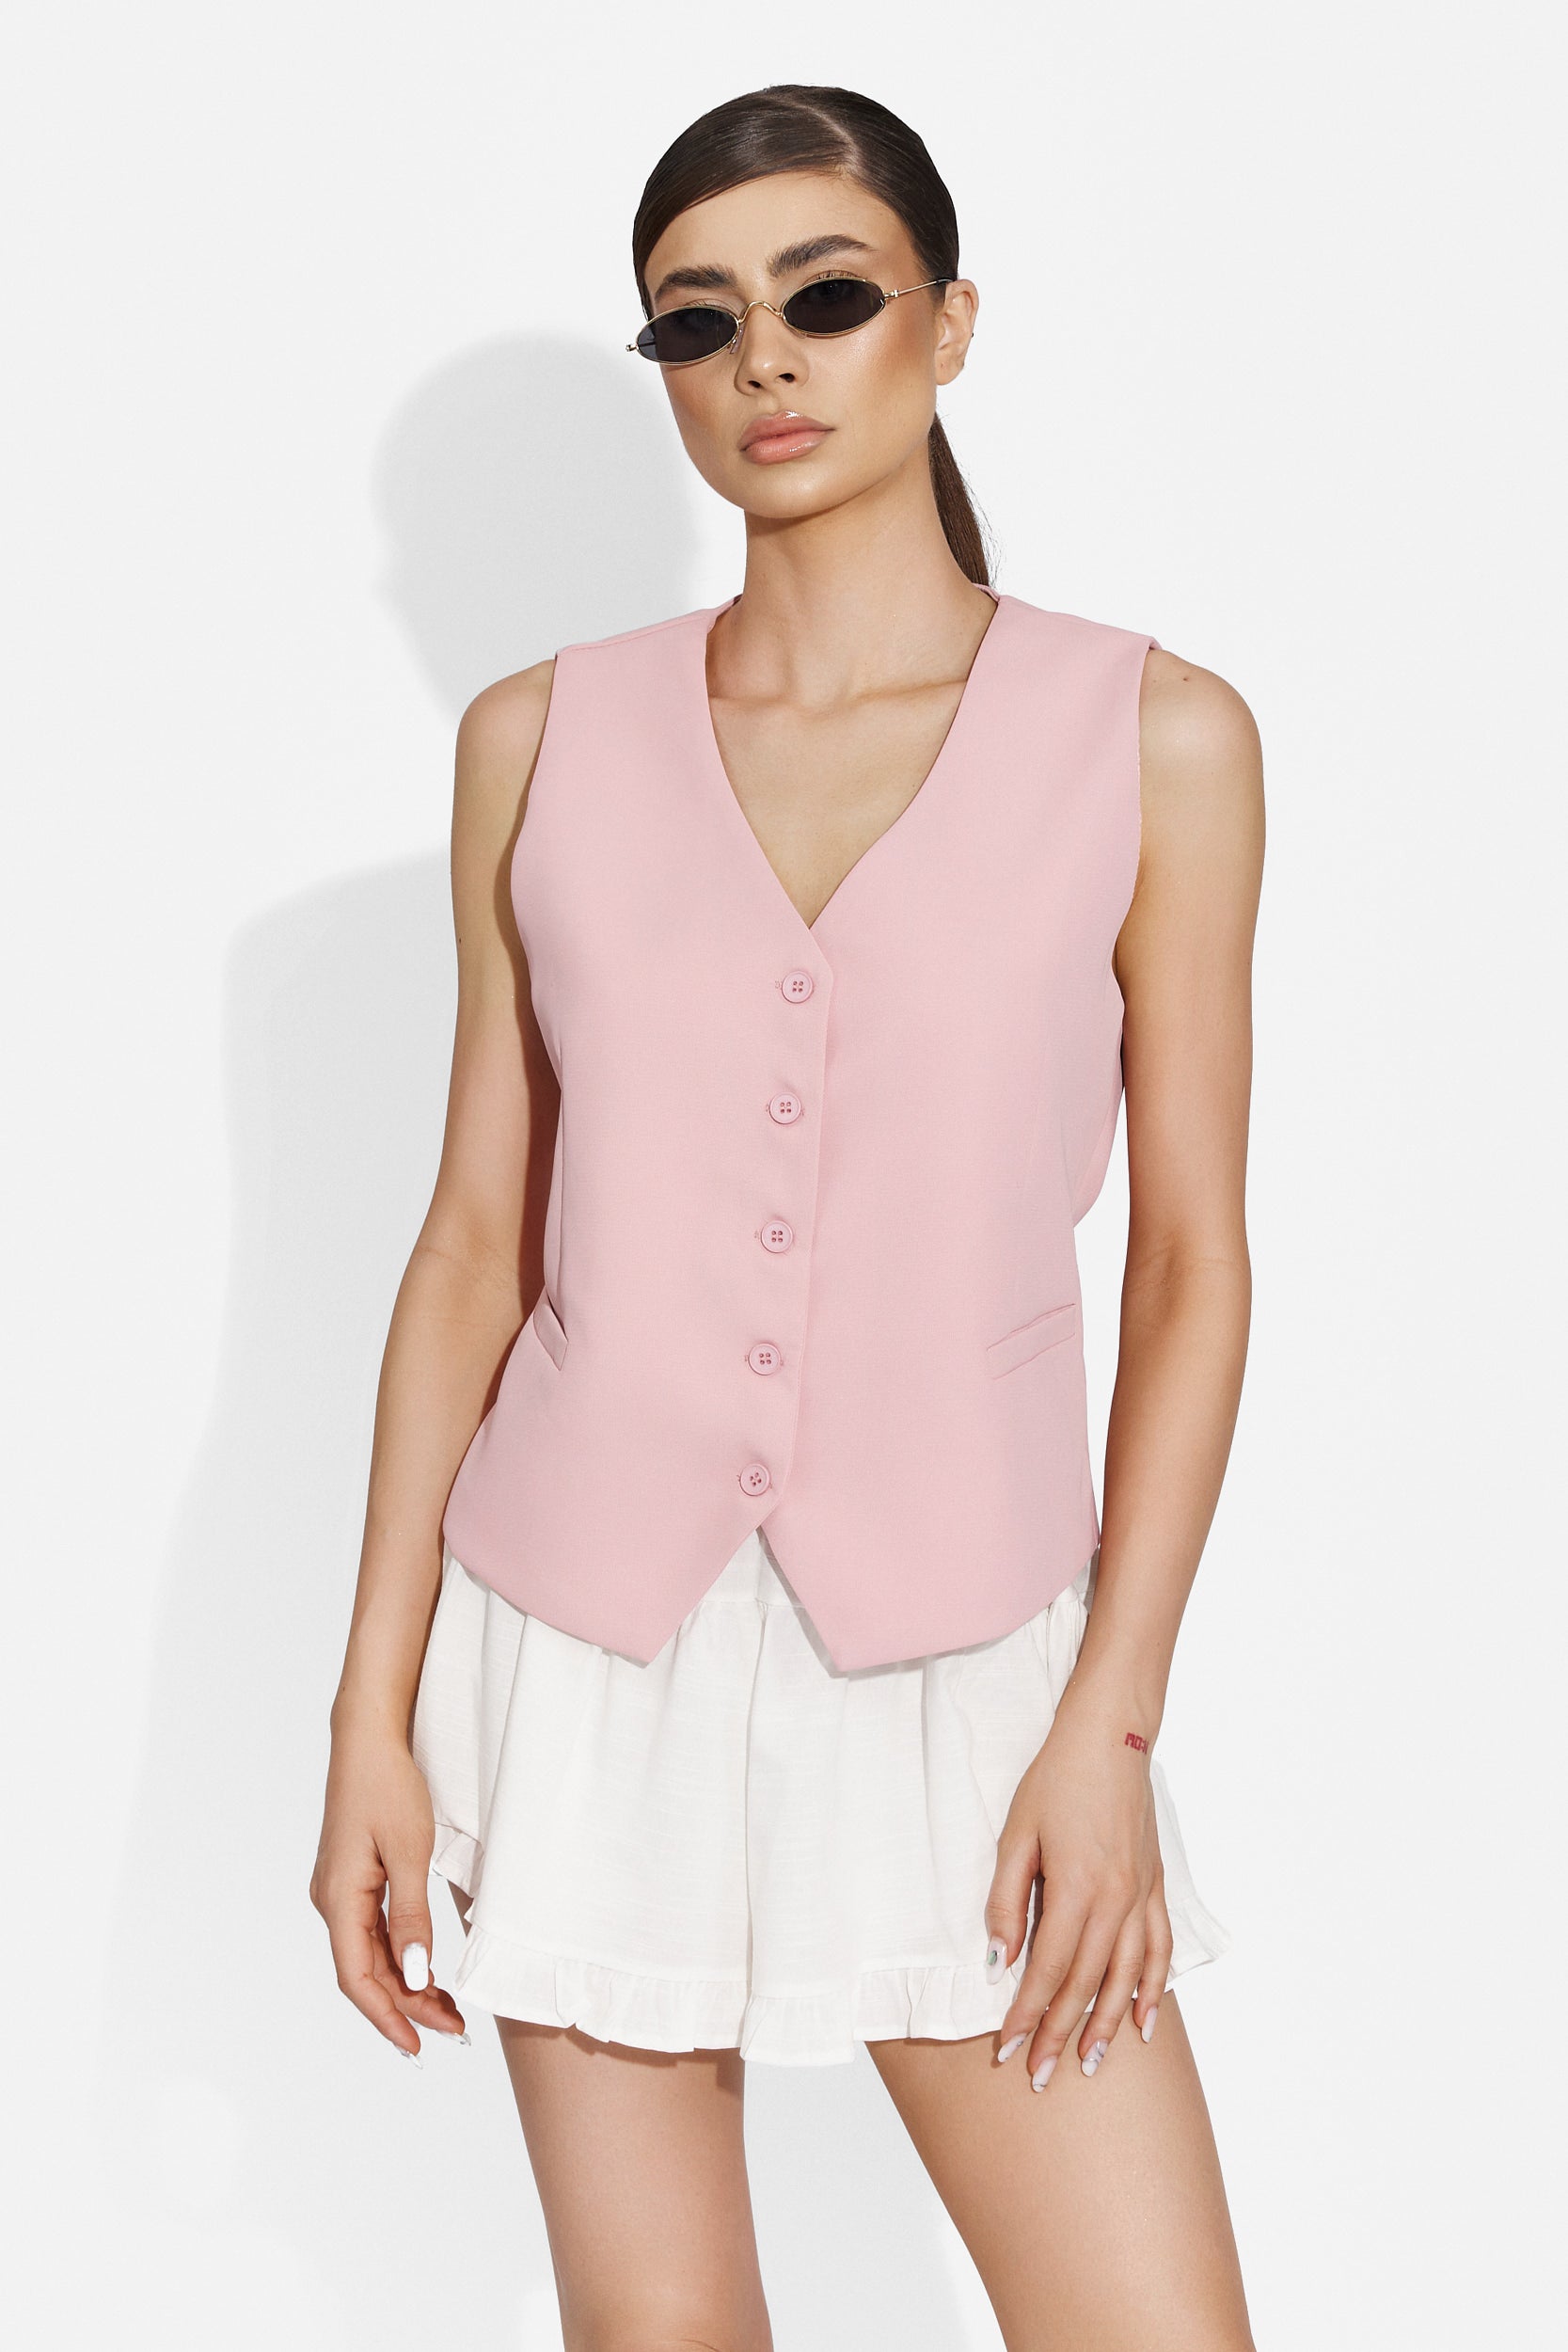 Versila Bogas pink lady's vest